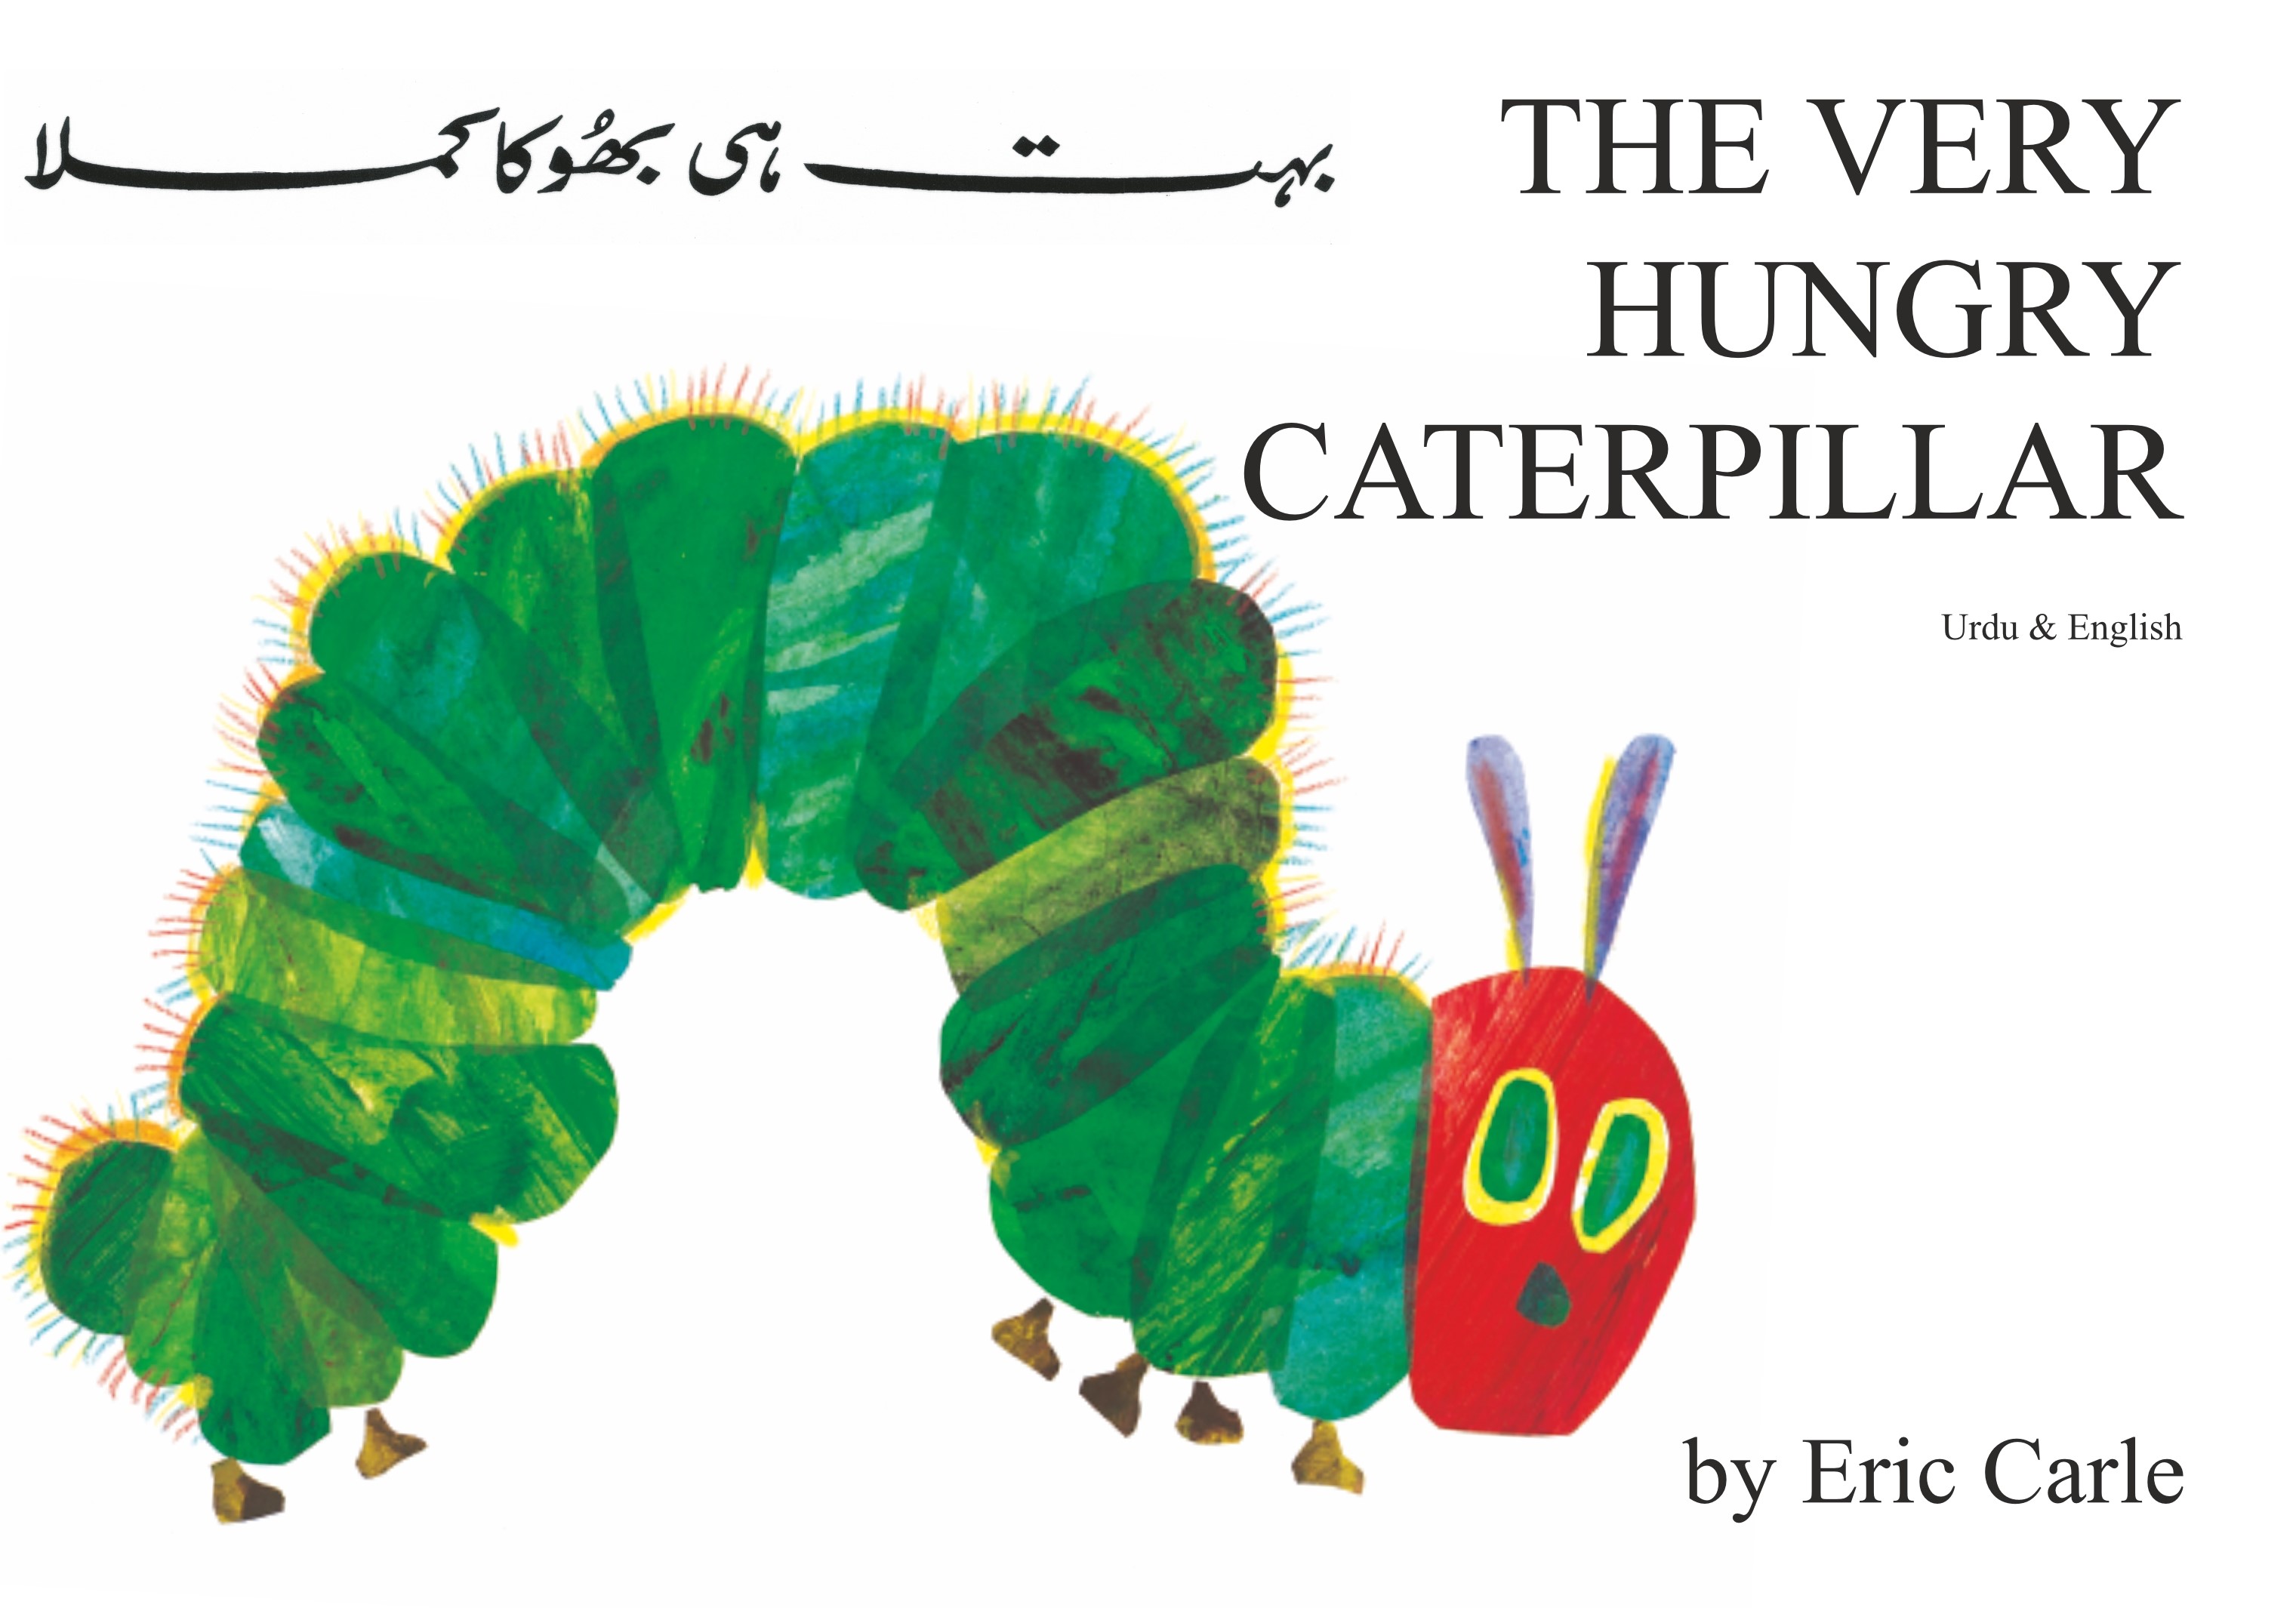 Hungry Cateroillar Urdu